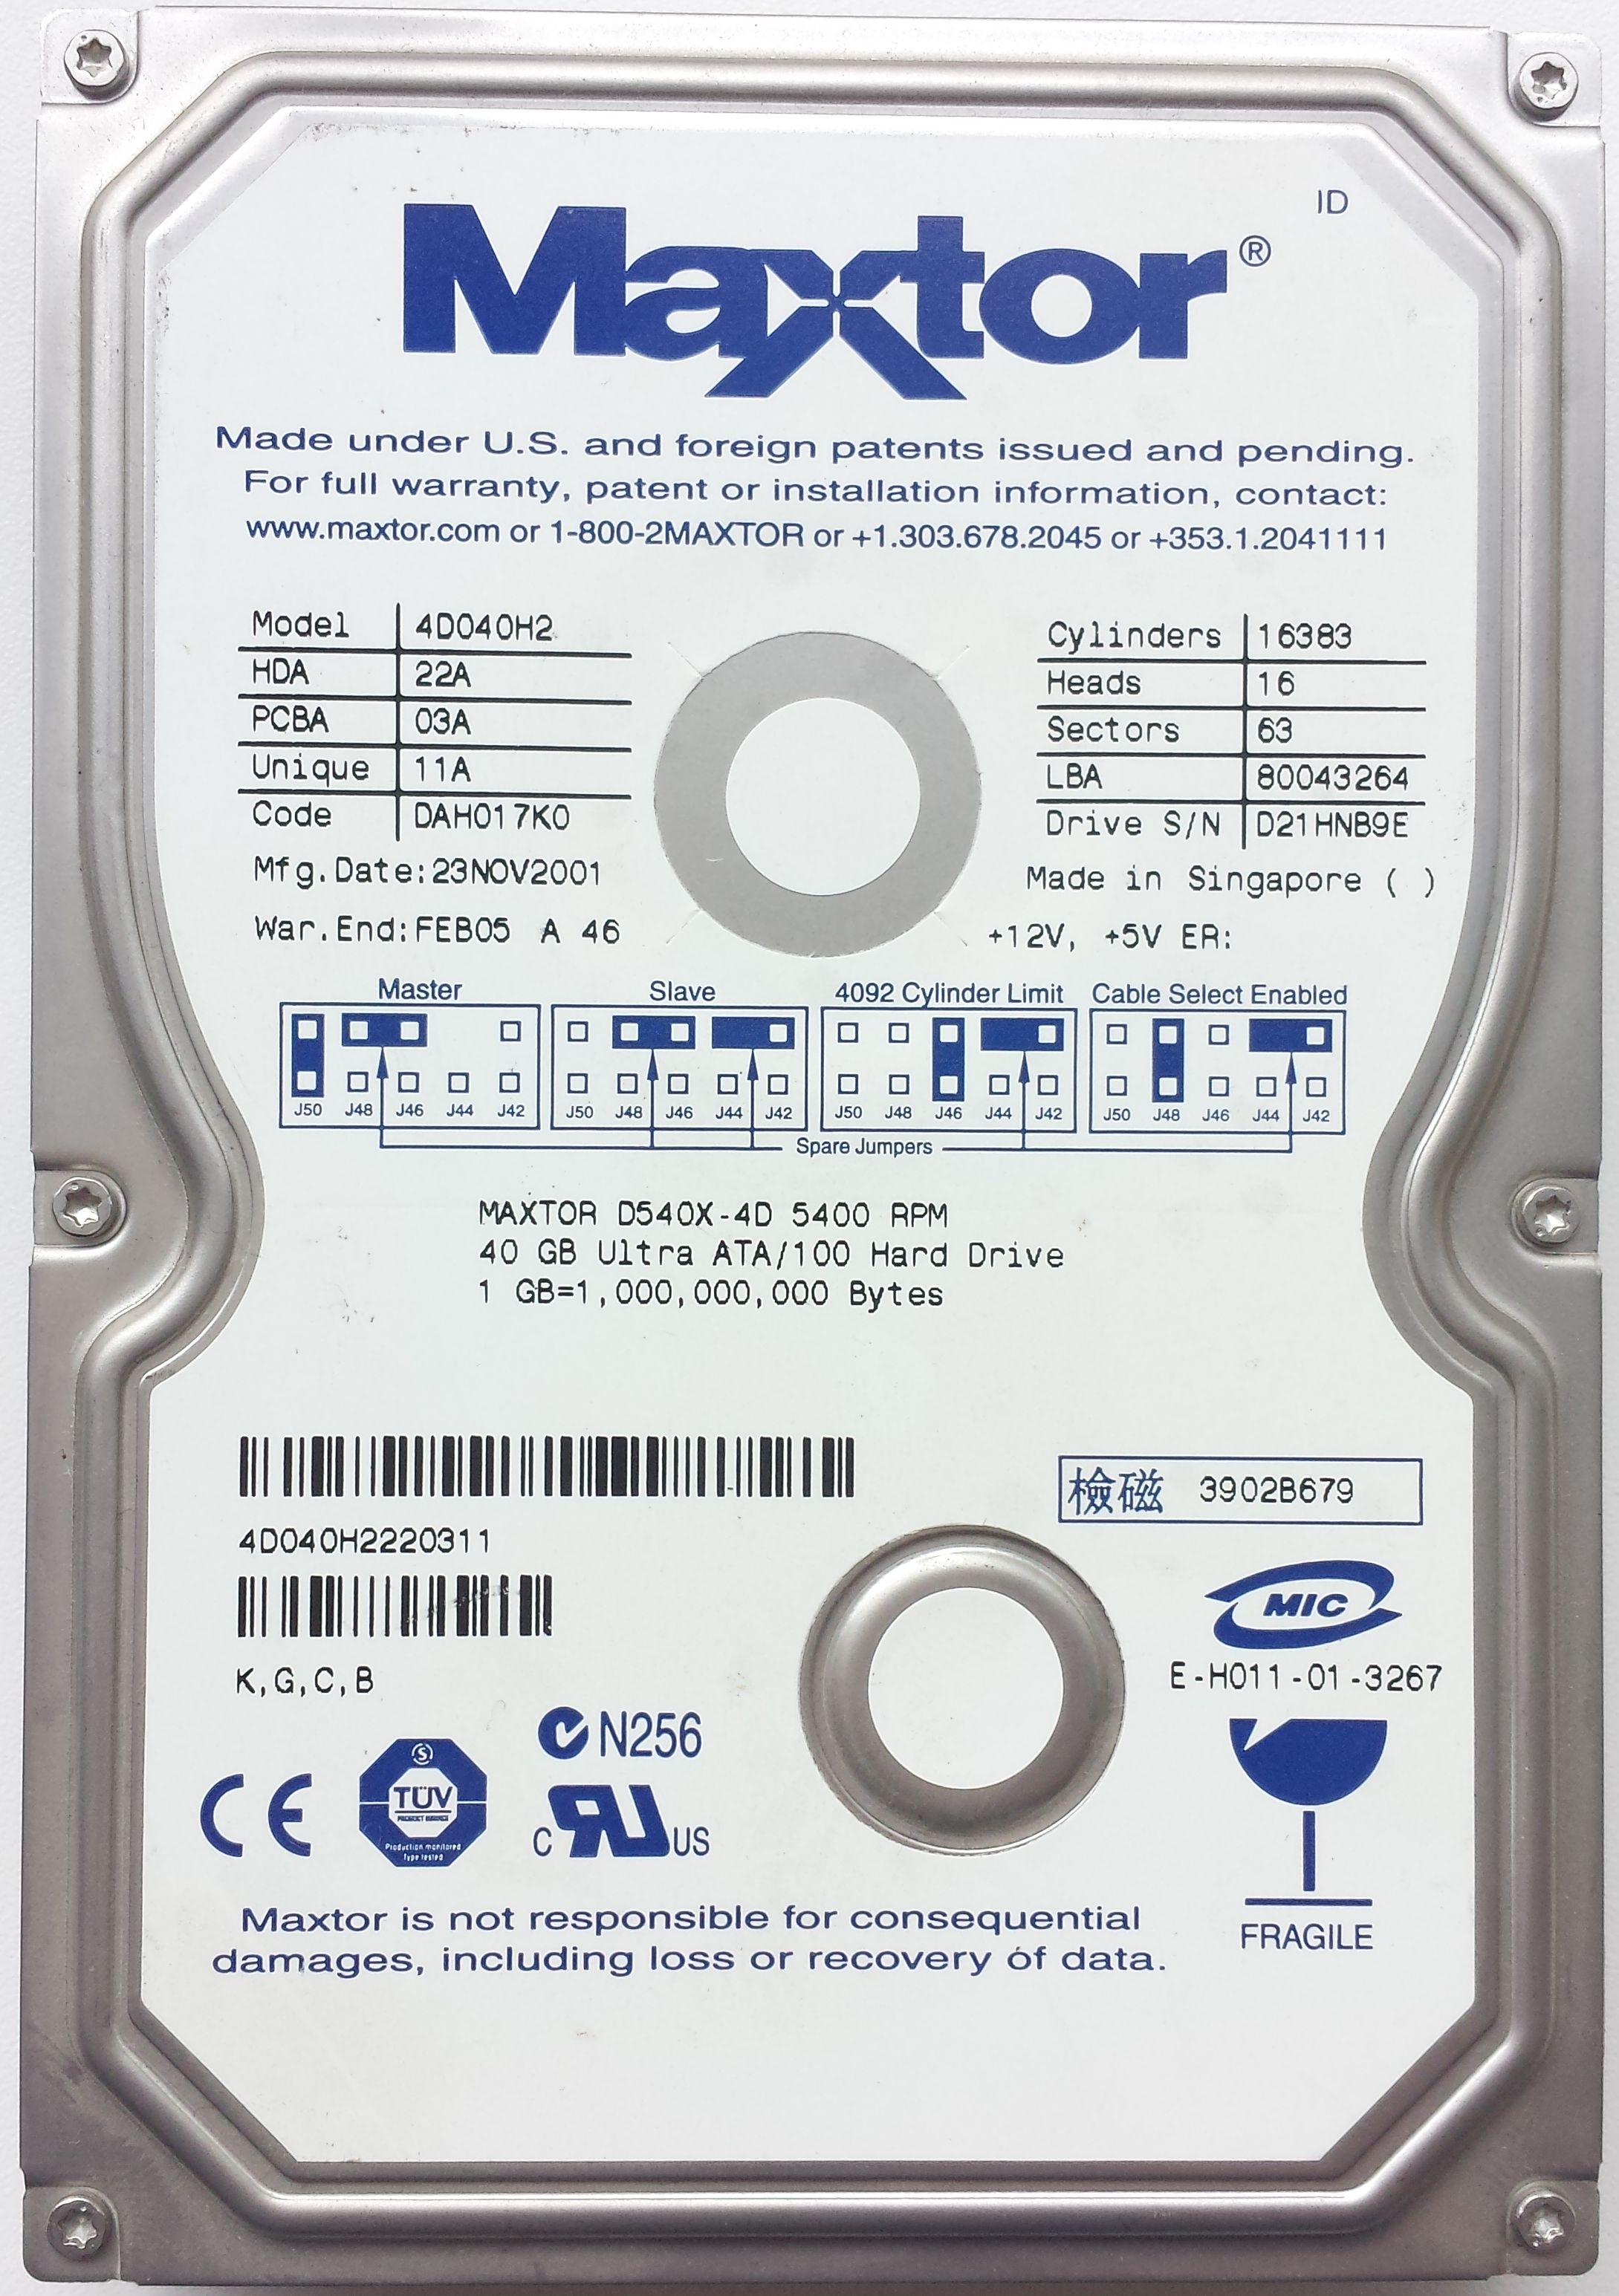 HDD PATA/100 3.5" 40GB / Maxtor DiamondMax D540X (4D040H2)